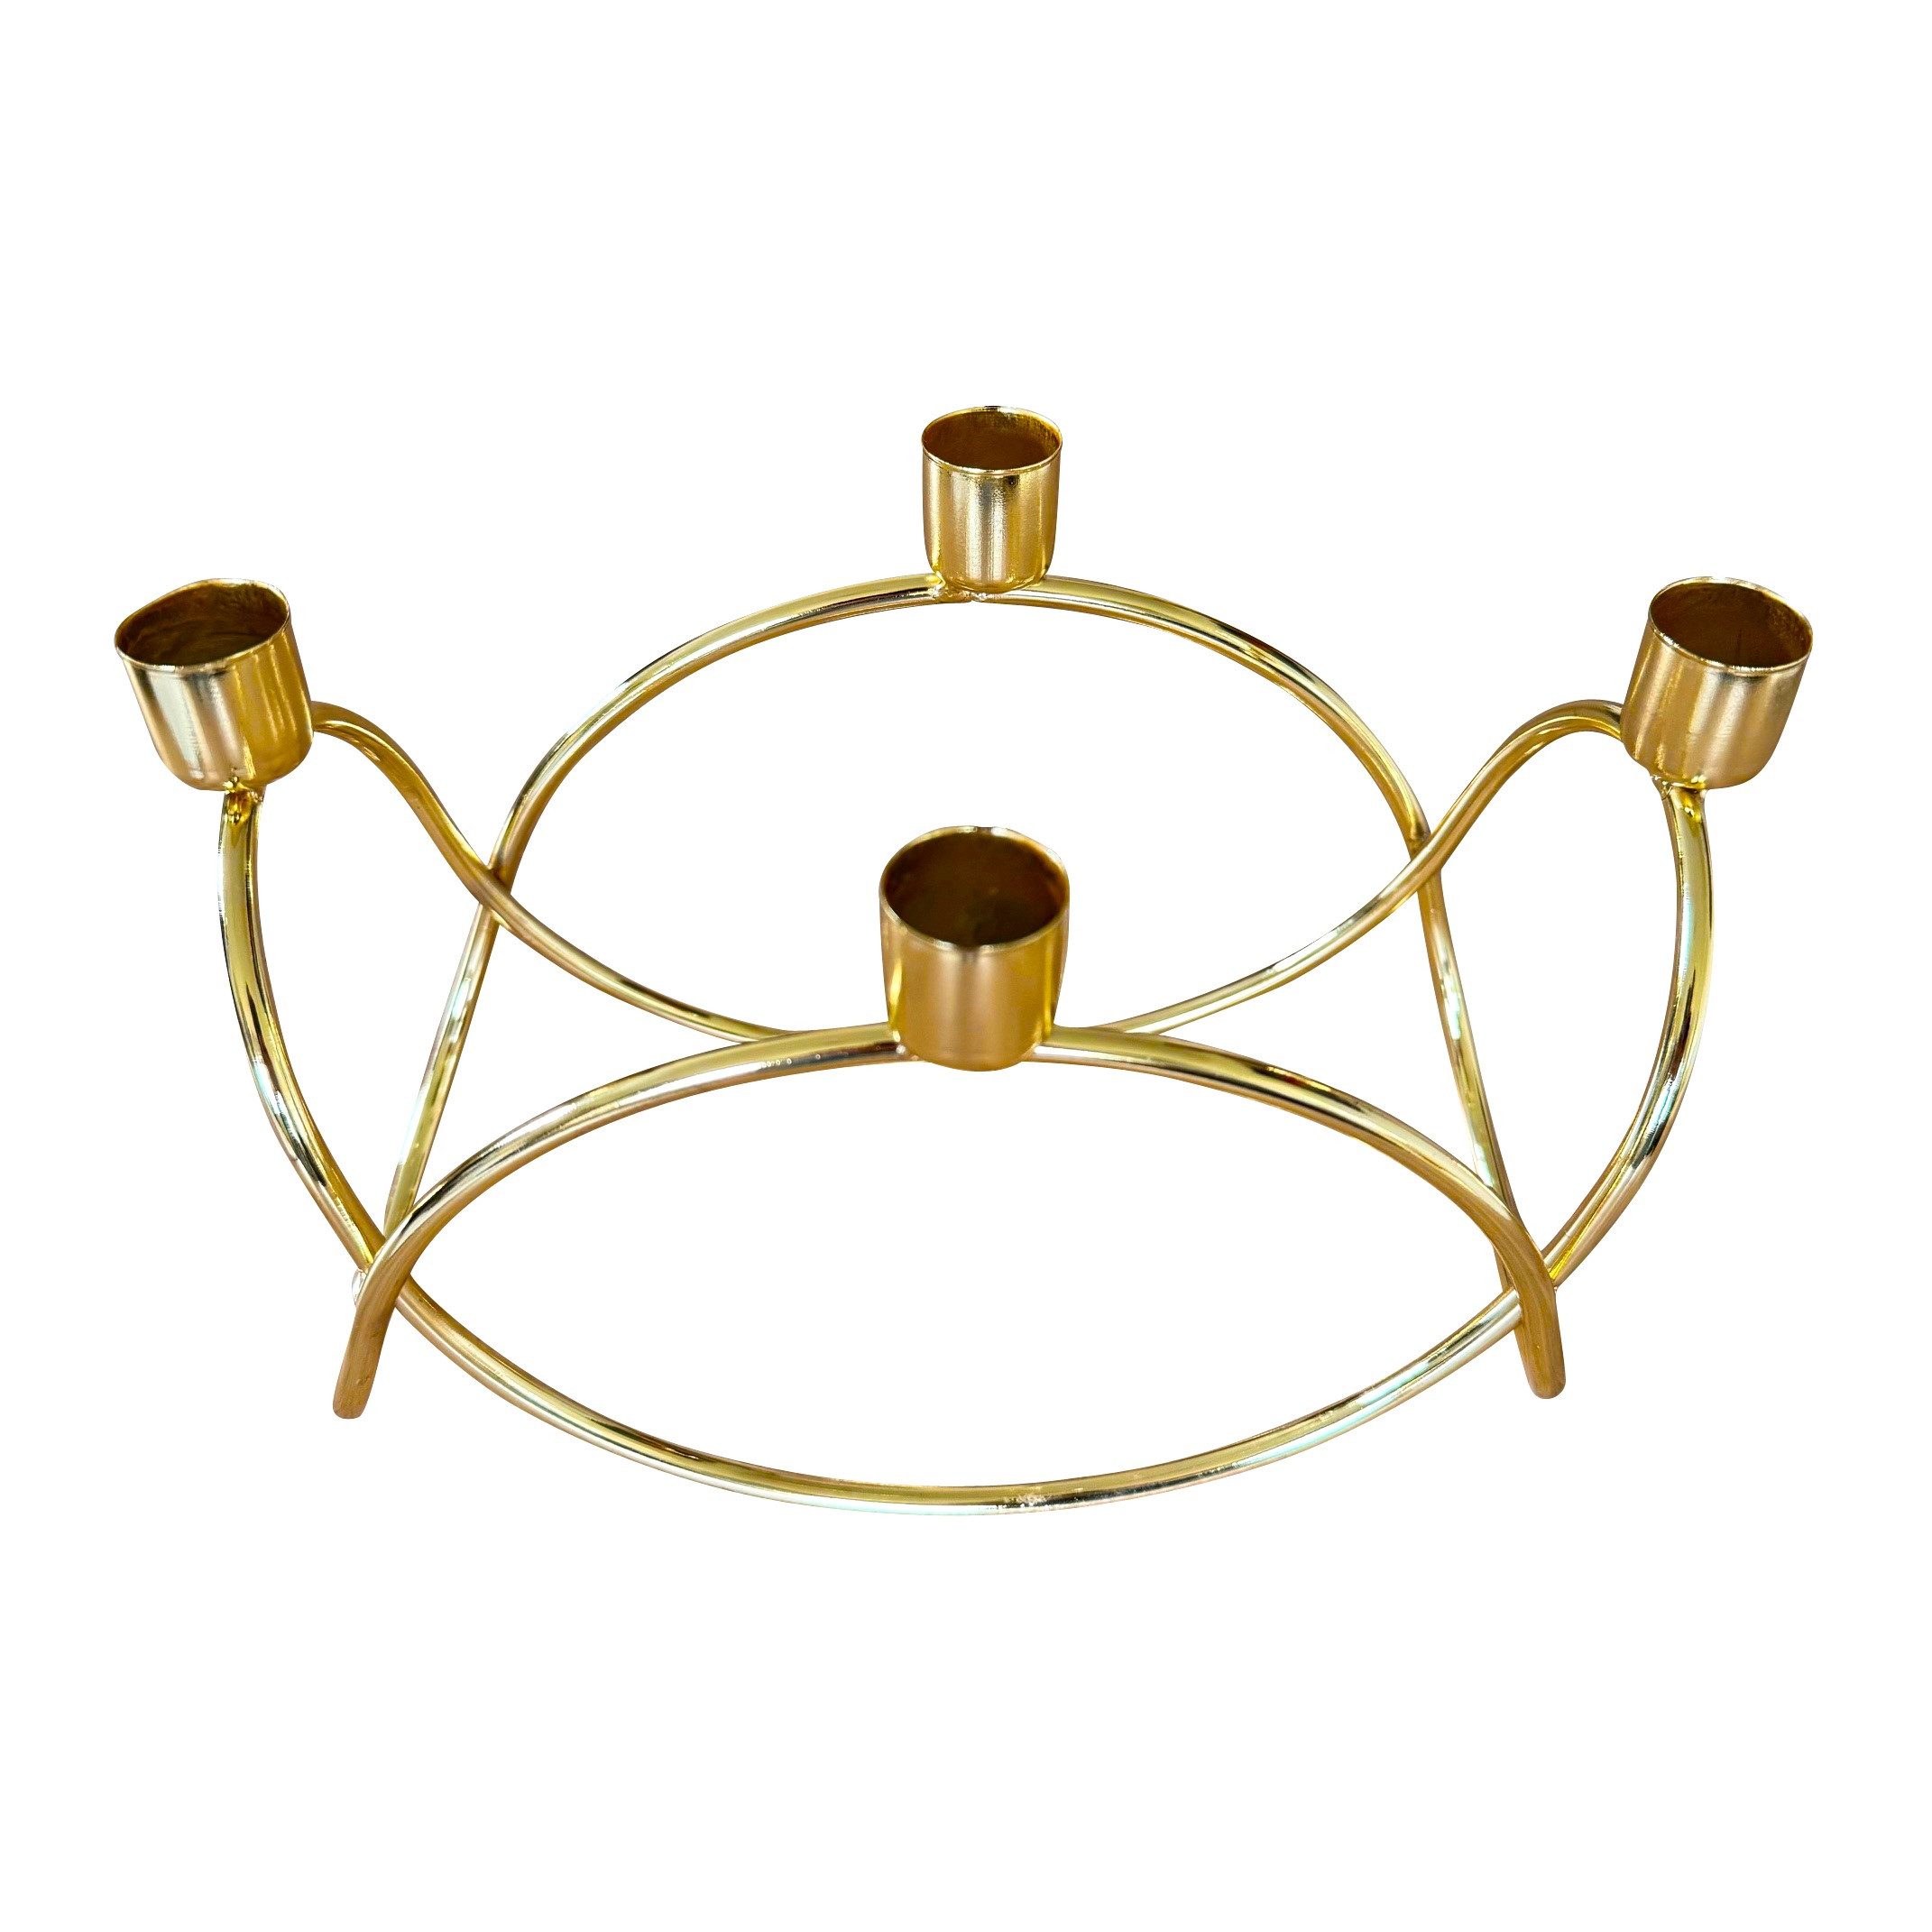 Online-Fuchs Kerzenhalter Kerzenständer, moderner Adventskranz aus Metall, geschwungen (Gold -, 24 x 13 cm groß), für 4 Stabkerzen geeignet